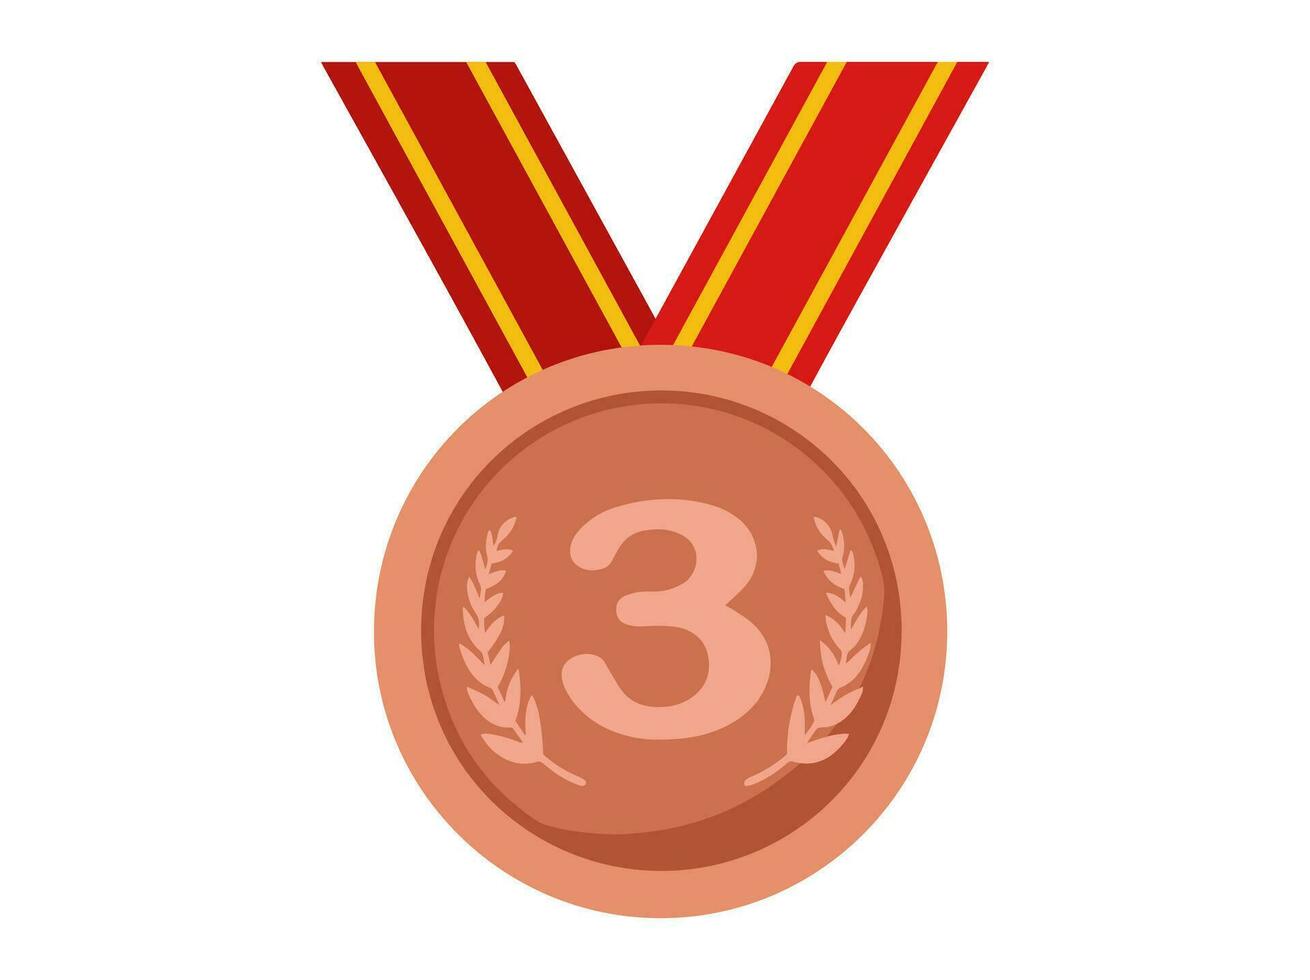 3:e plats brons medalj illustration vektor